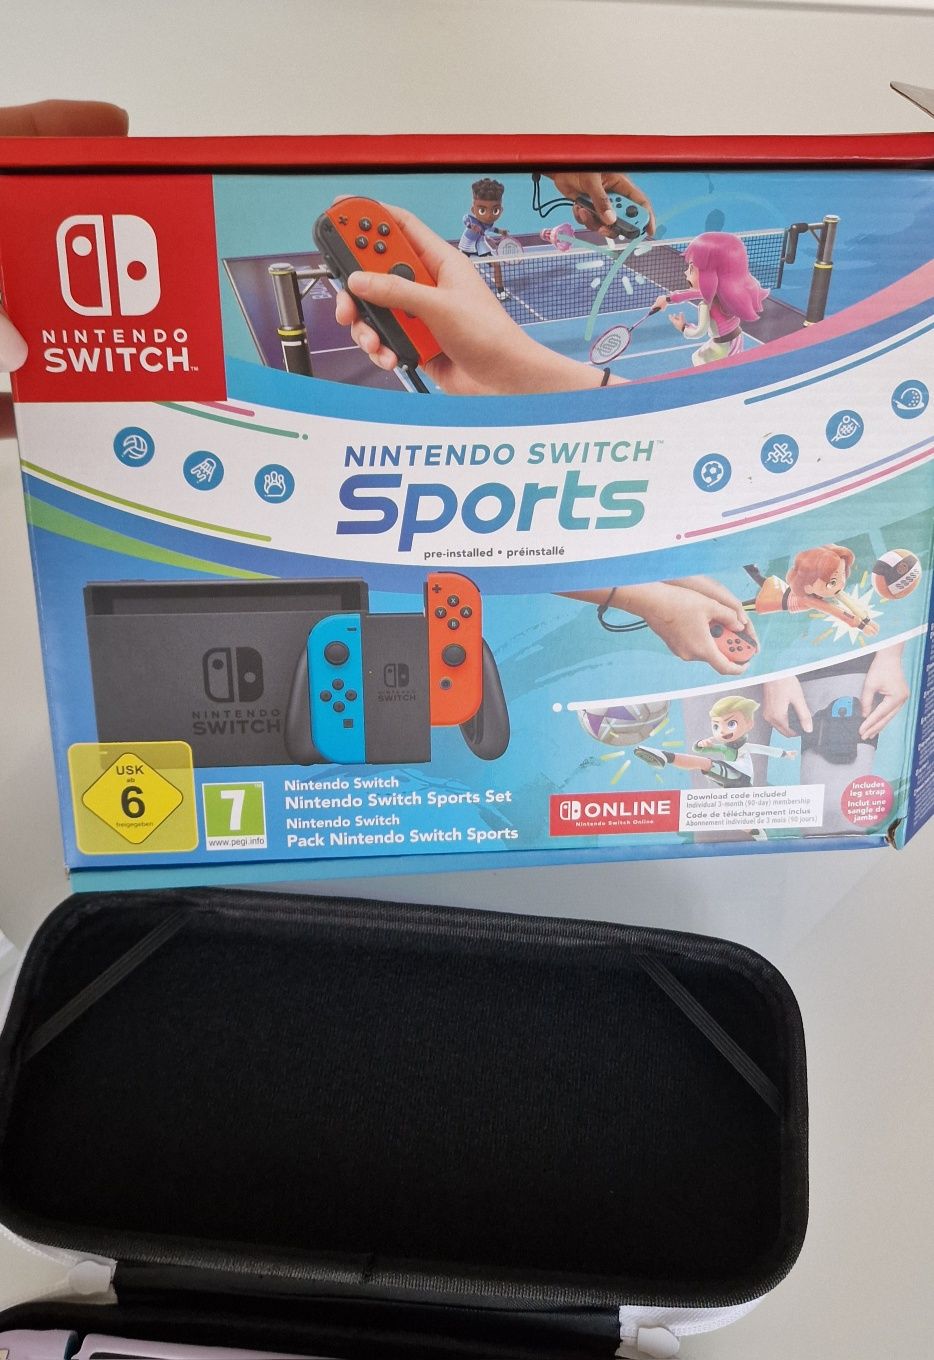 Nintendo switch sports